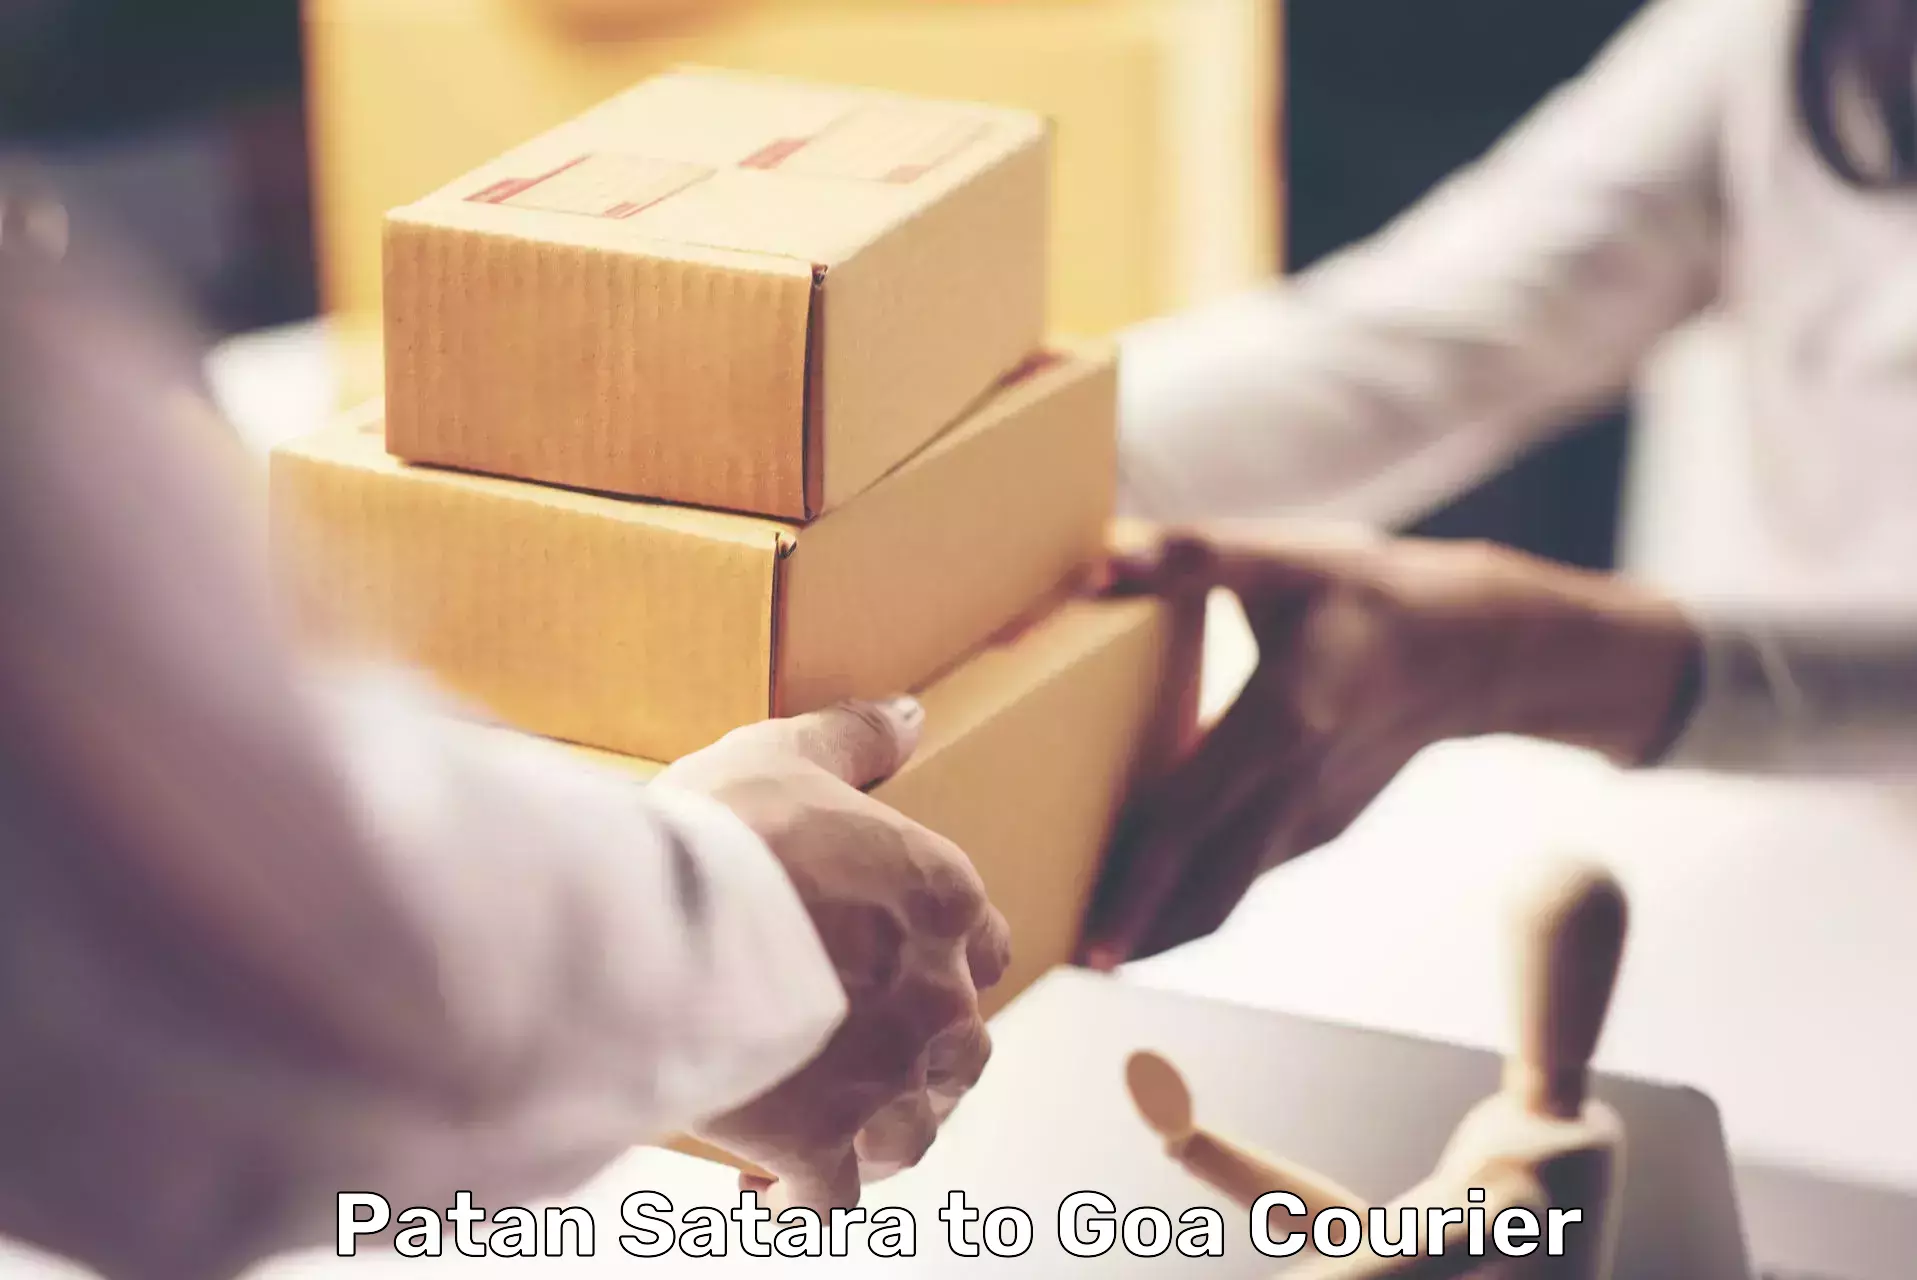 Domestic courier Patan Satara to Goa University